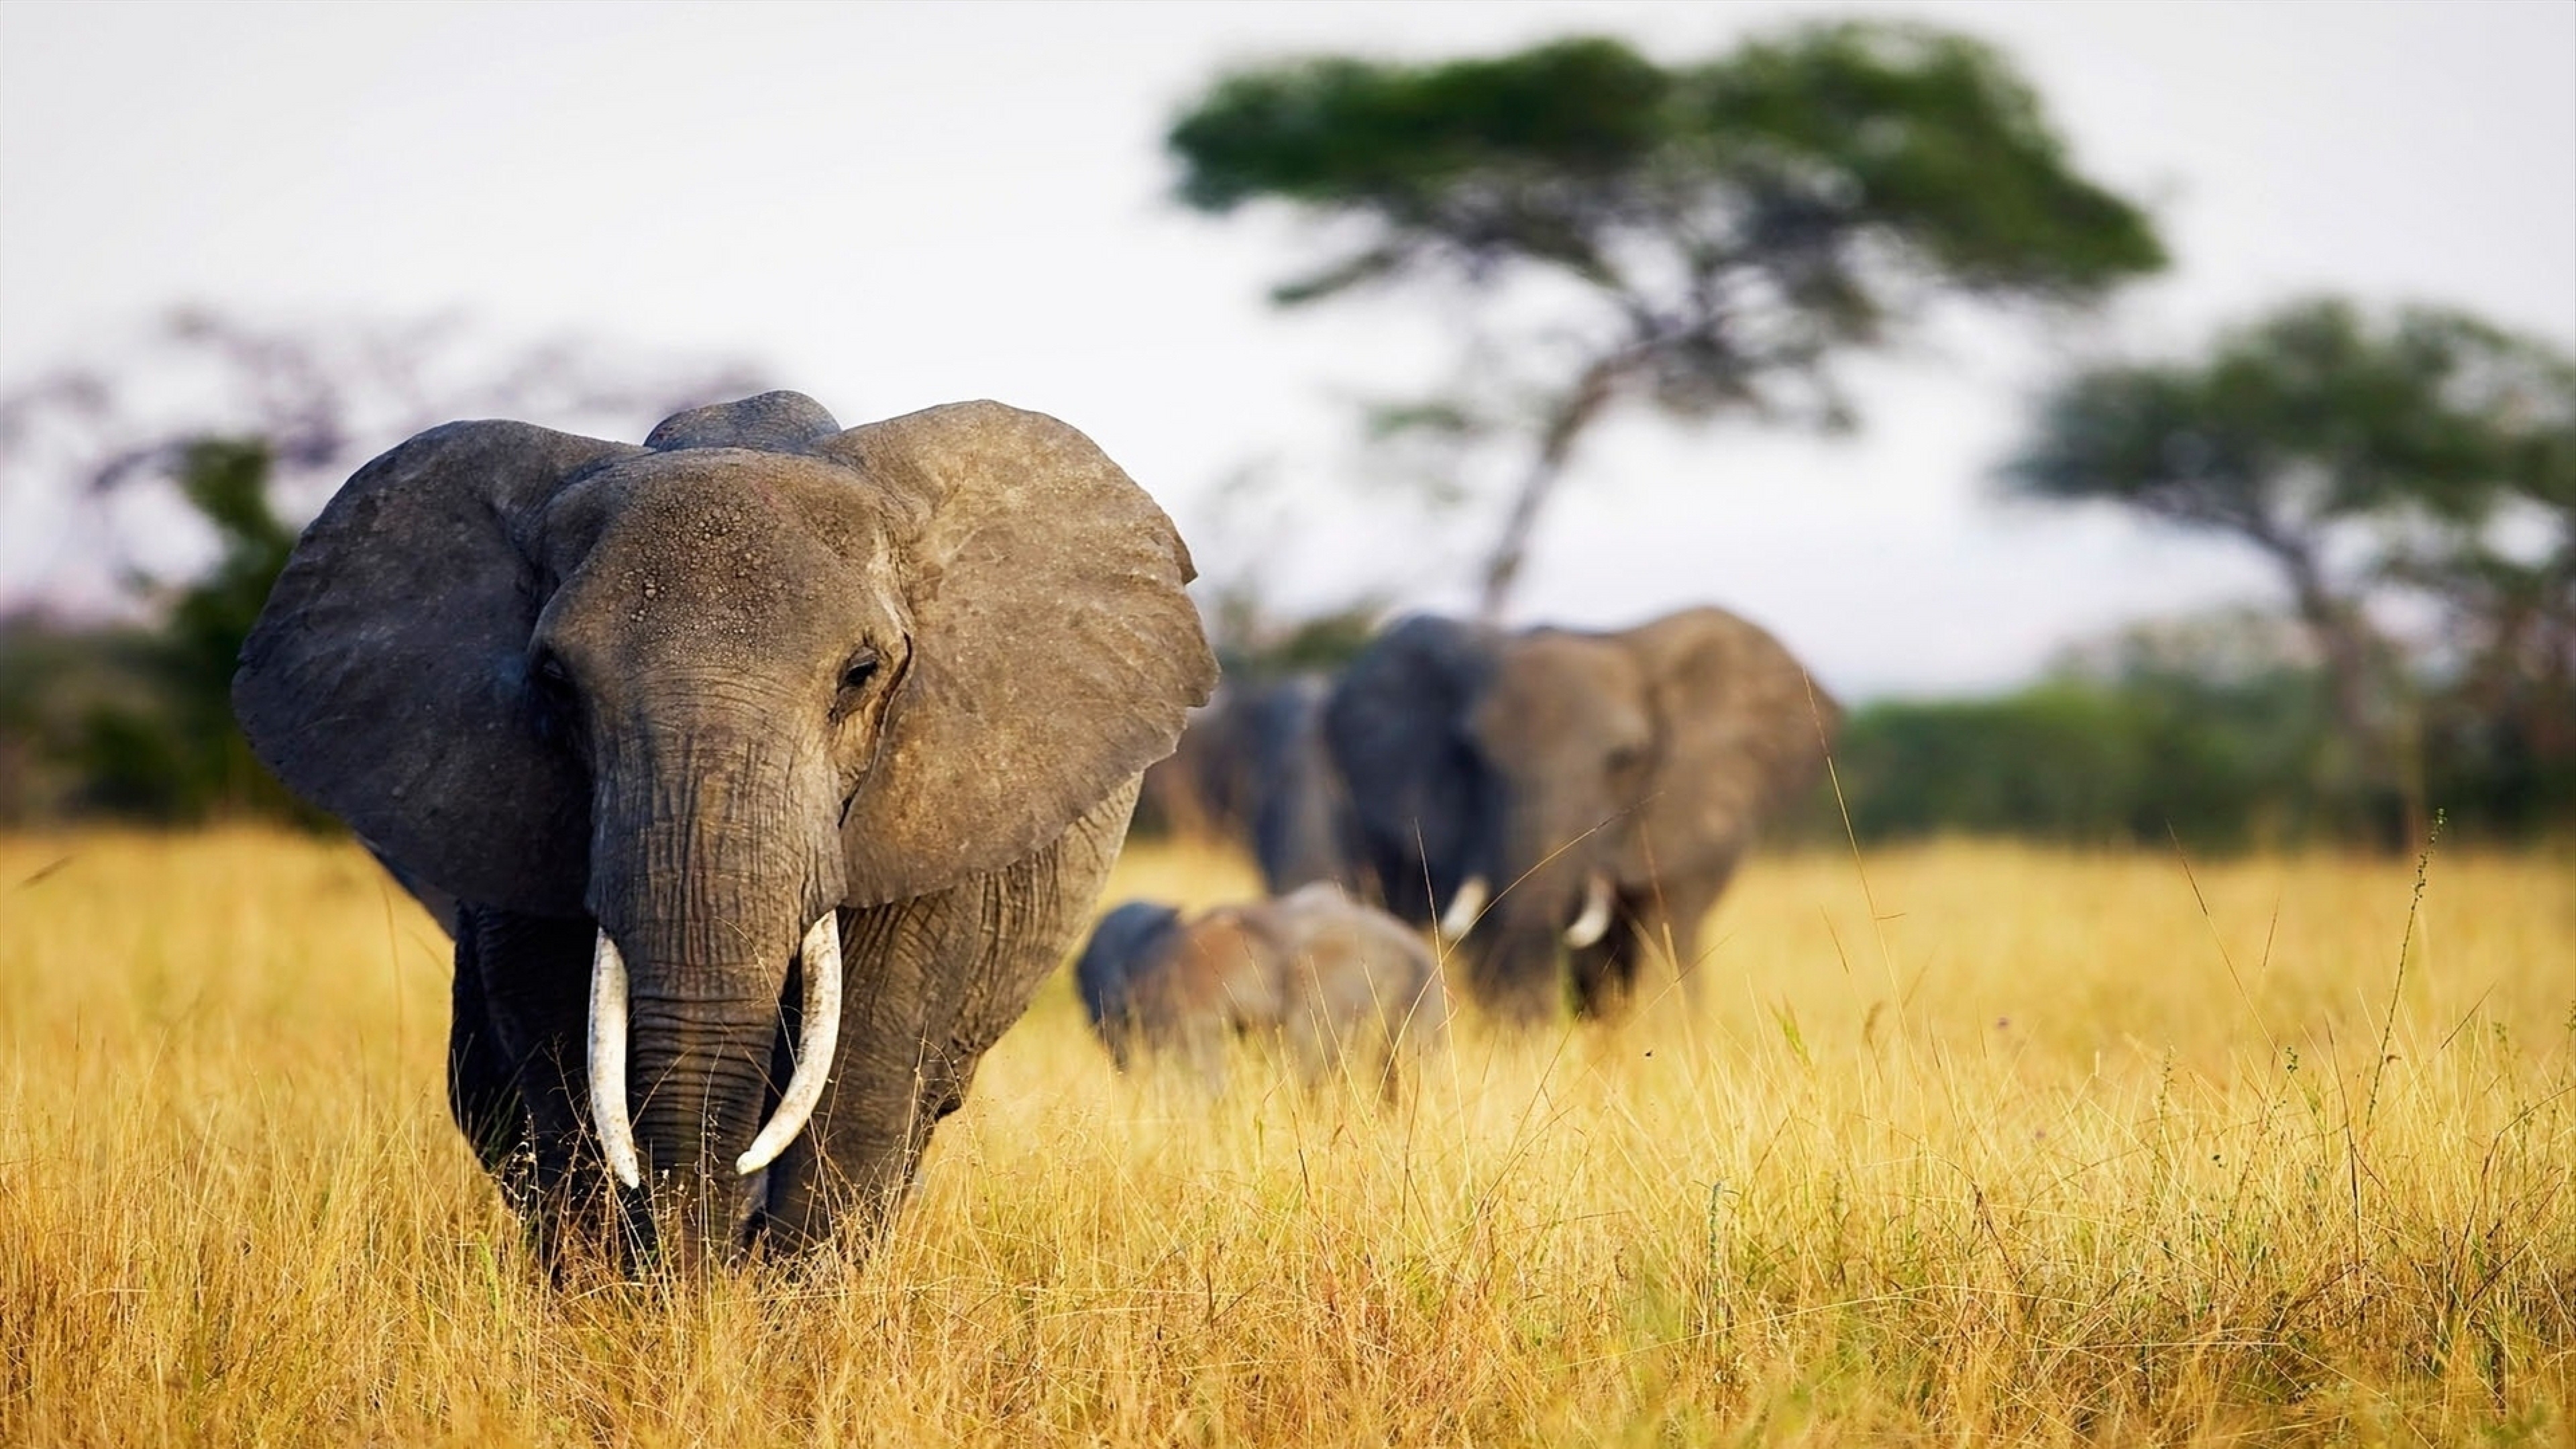  Elephant Grass Walk Africa Field Wallpaper Background 4K Ultra HD 3840x2160